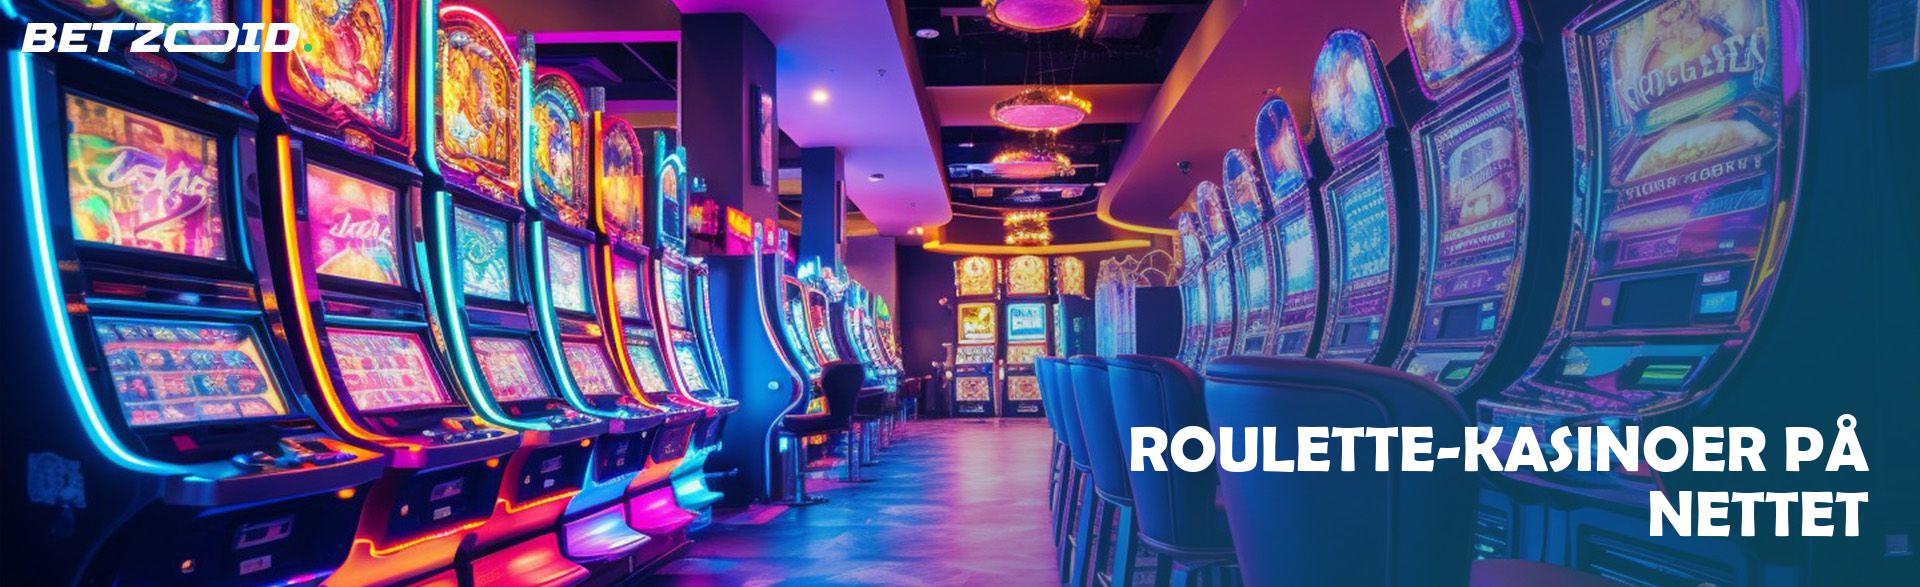 Roulette-Kasinoer på Nettet.